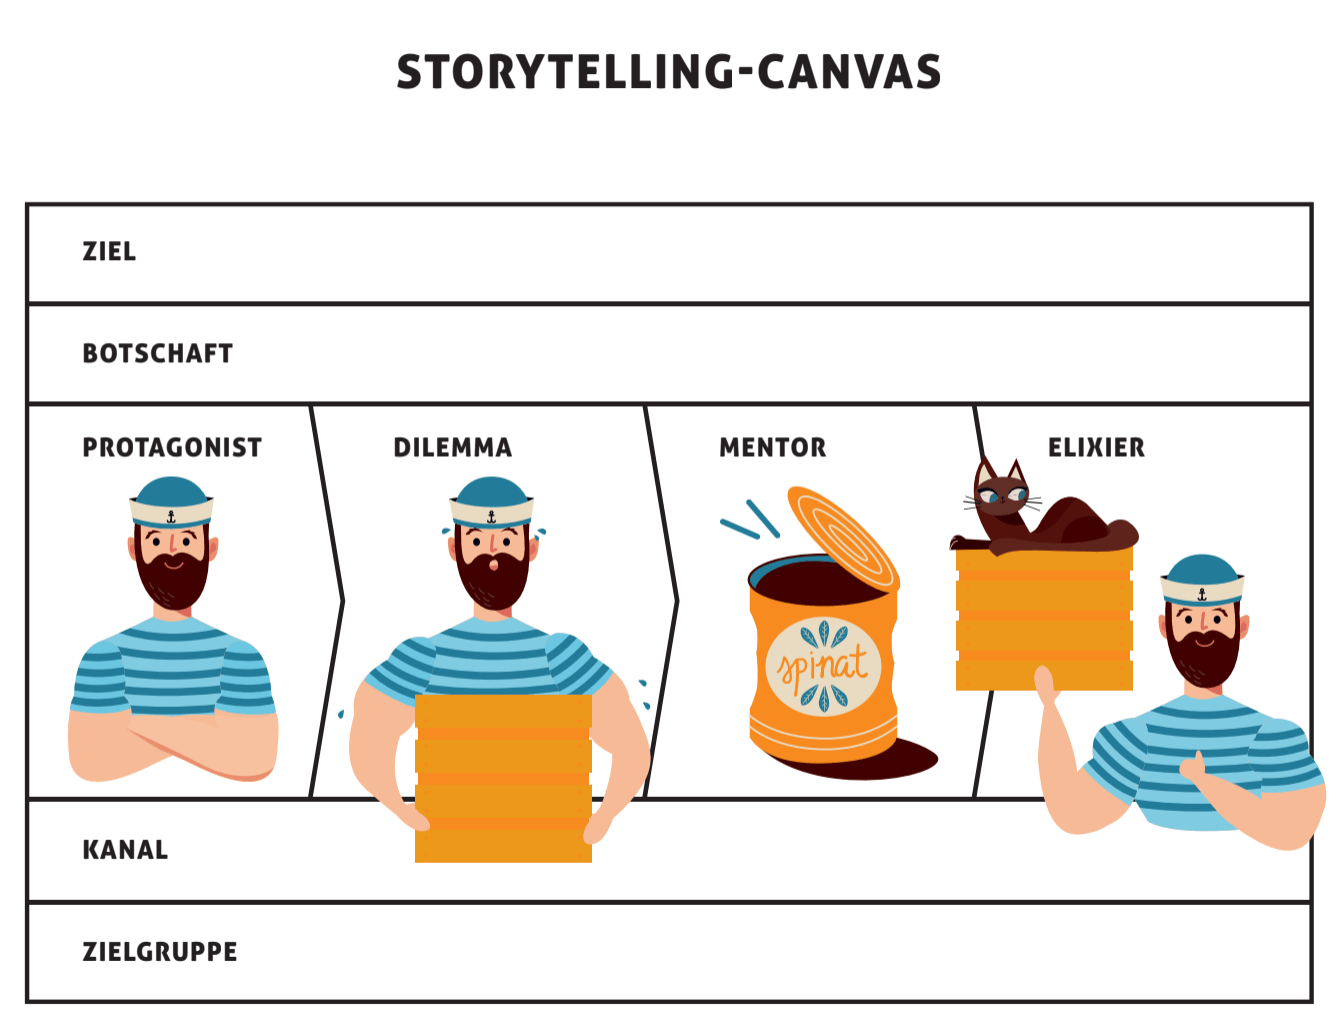 Storytelling-Canvas aus dem Buch von Matthias M. Mattenberger «Brandtelling – Storytelling, das Marken und Menschen verbindet»